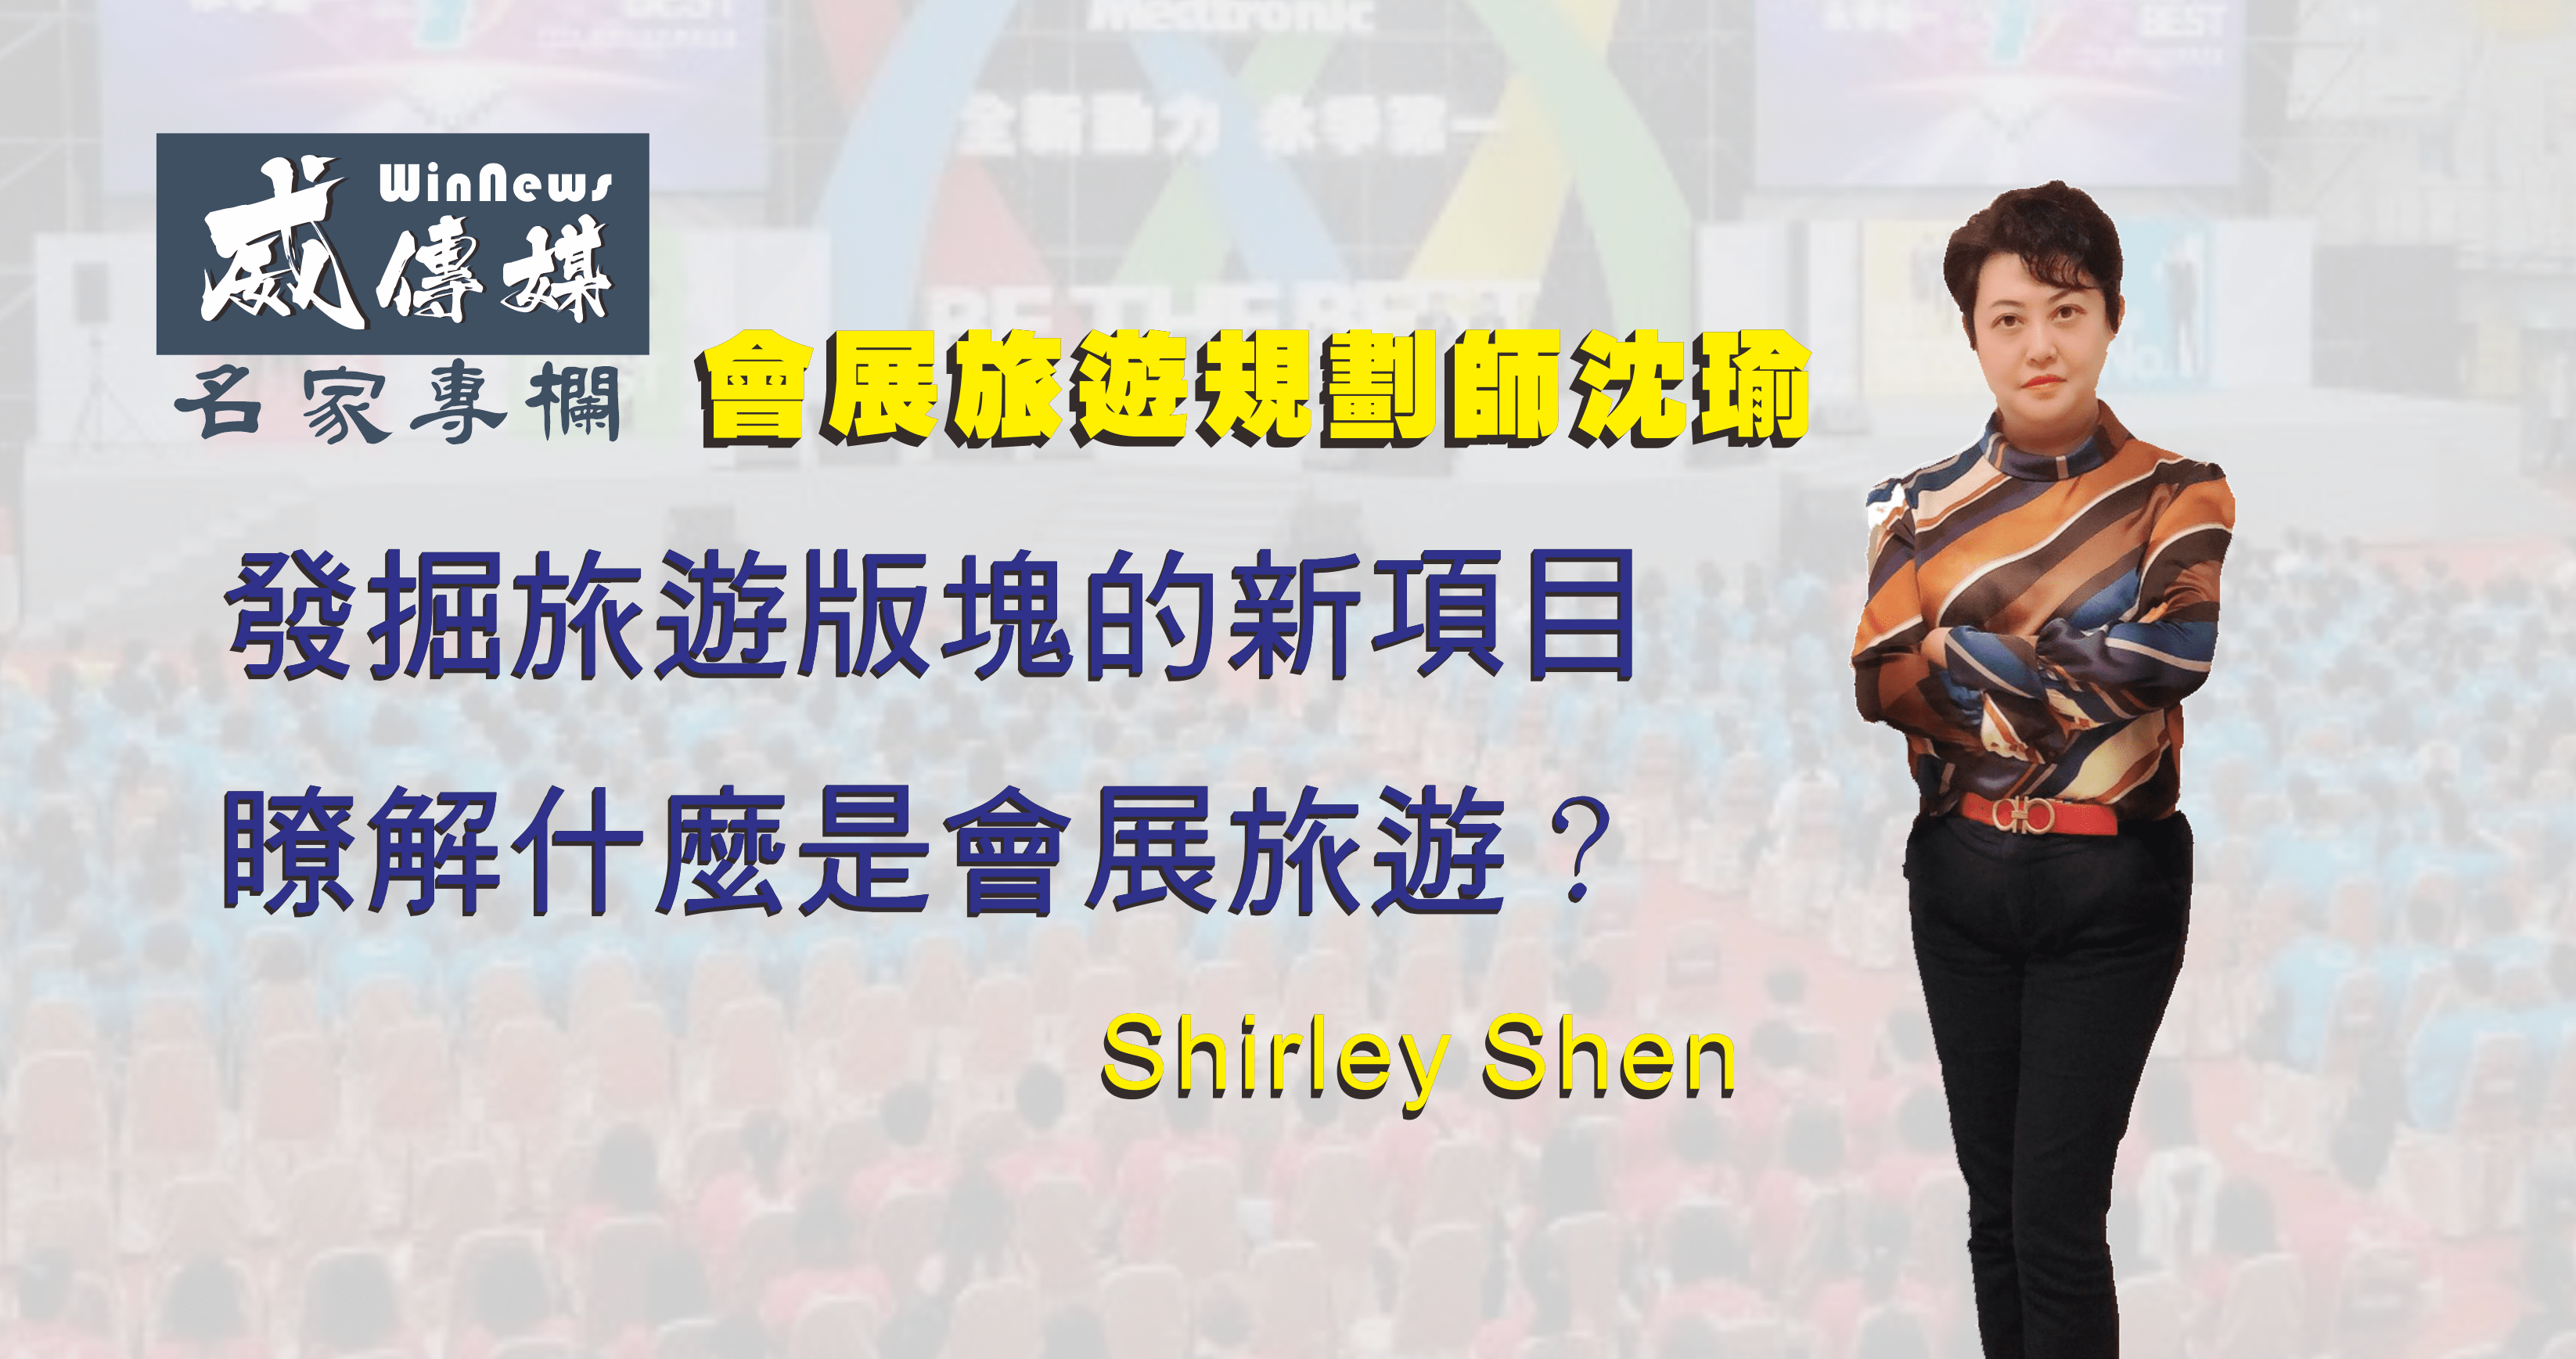 Shirley Shen